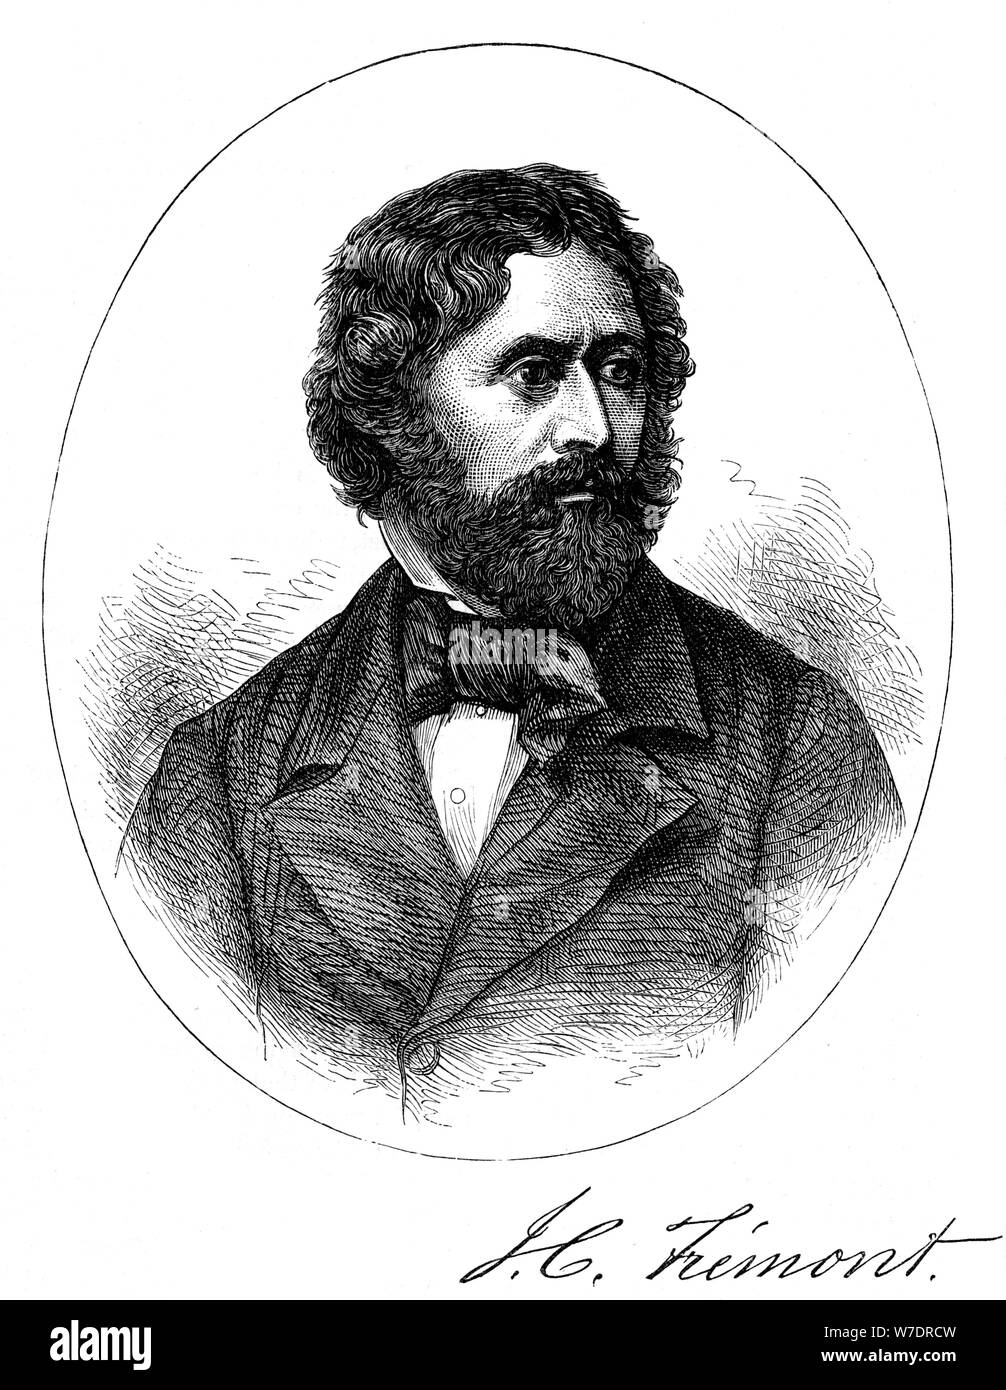 John C. Fremont, soldat américain, explorateur et candidat à la présidentielle, (c1880). Artiste : Inconnu Banque D'Images